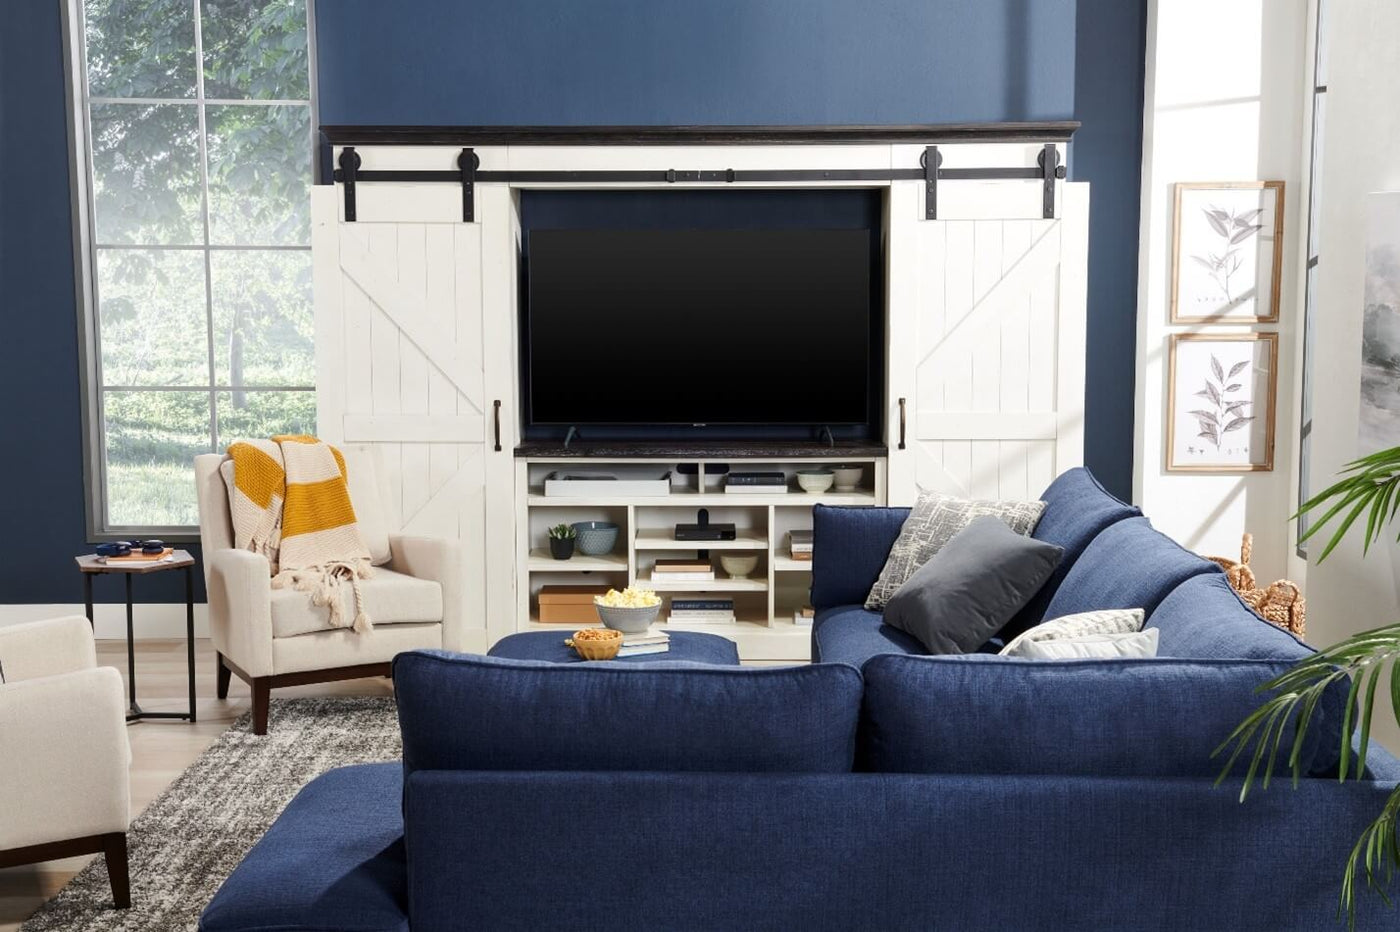 Finding the Right TV Placement in Your Home|Trouver le bon emplacement pour votre téléviseur dans votre demeure